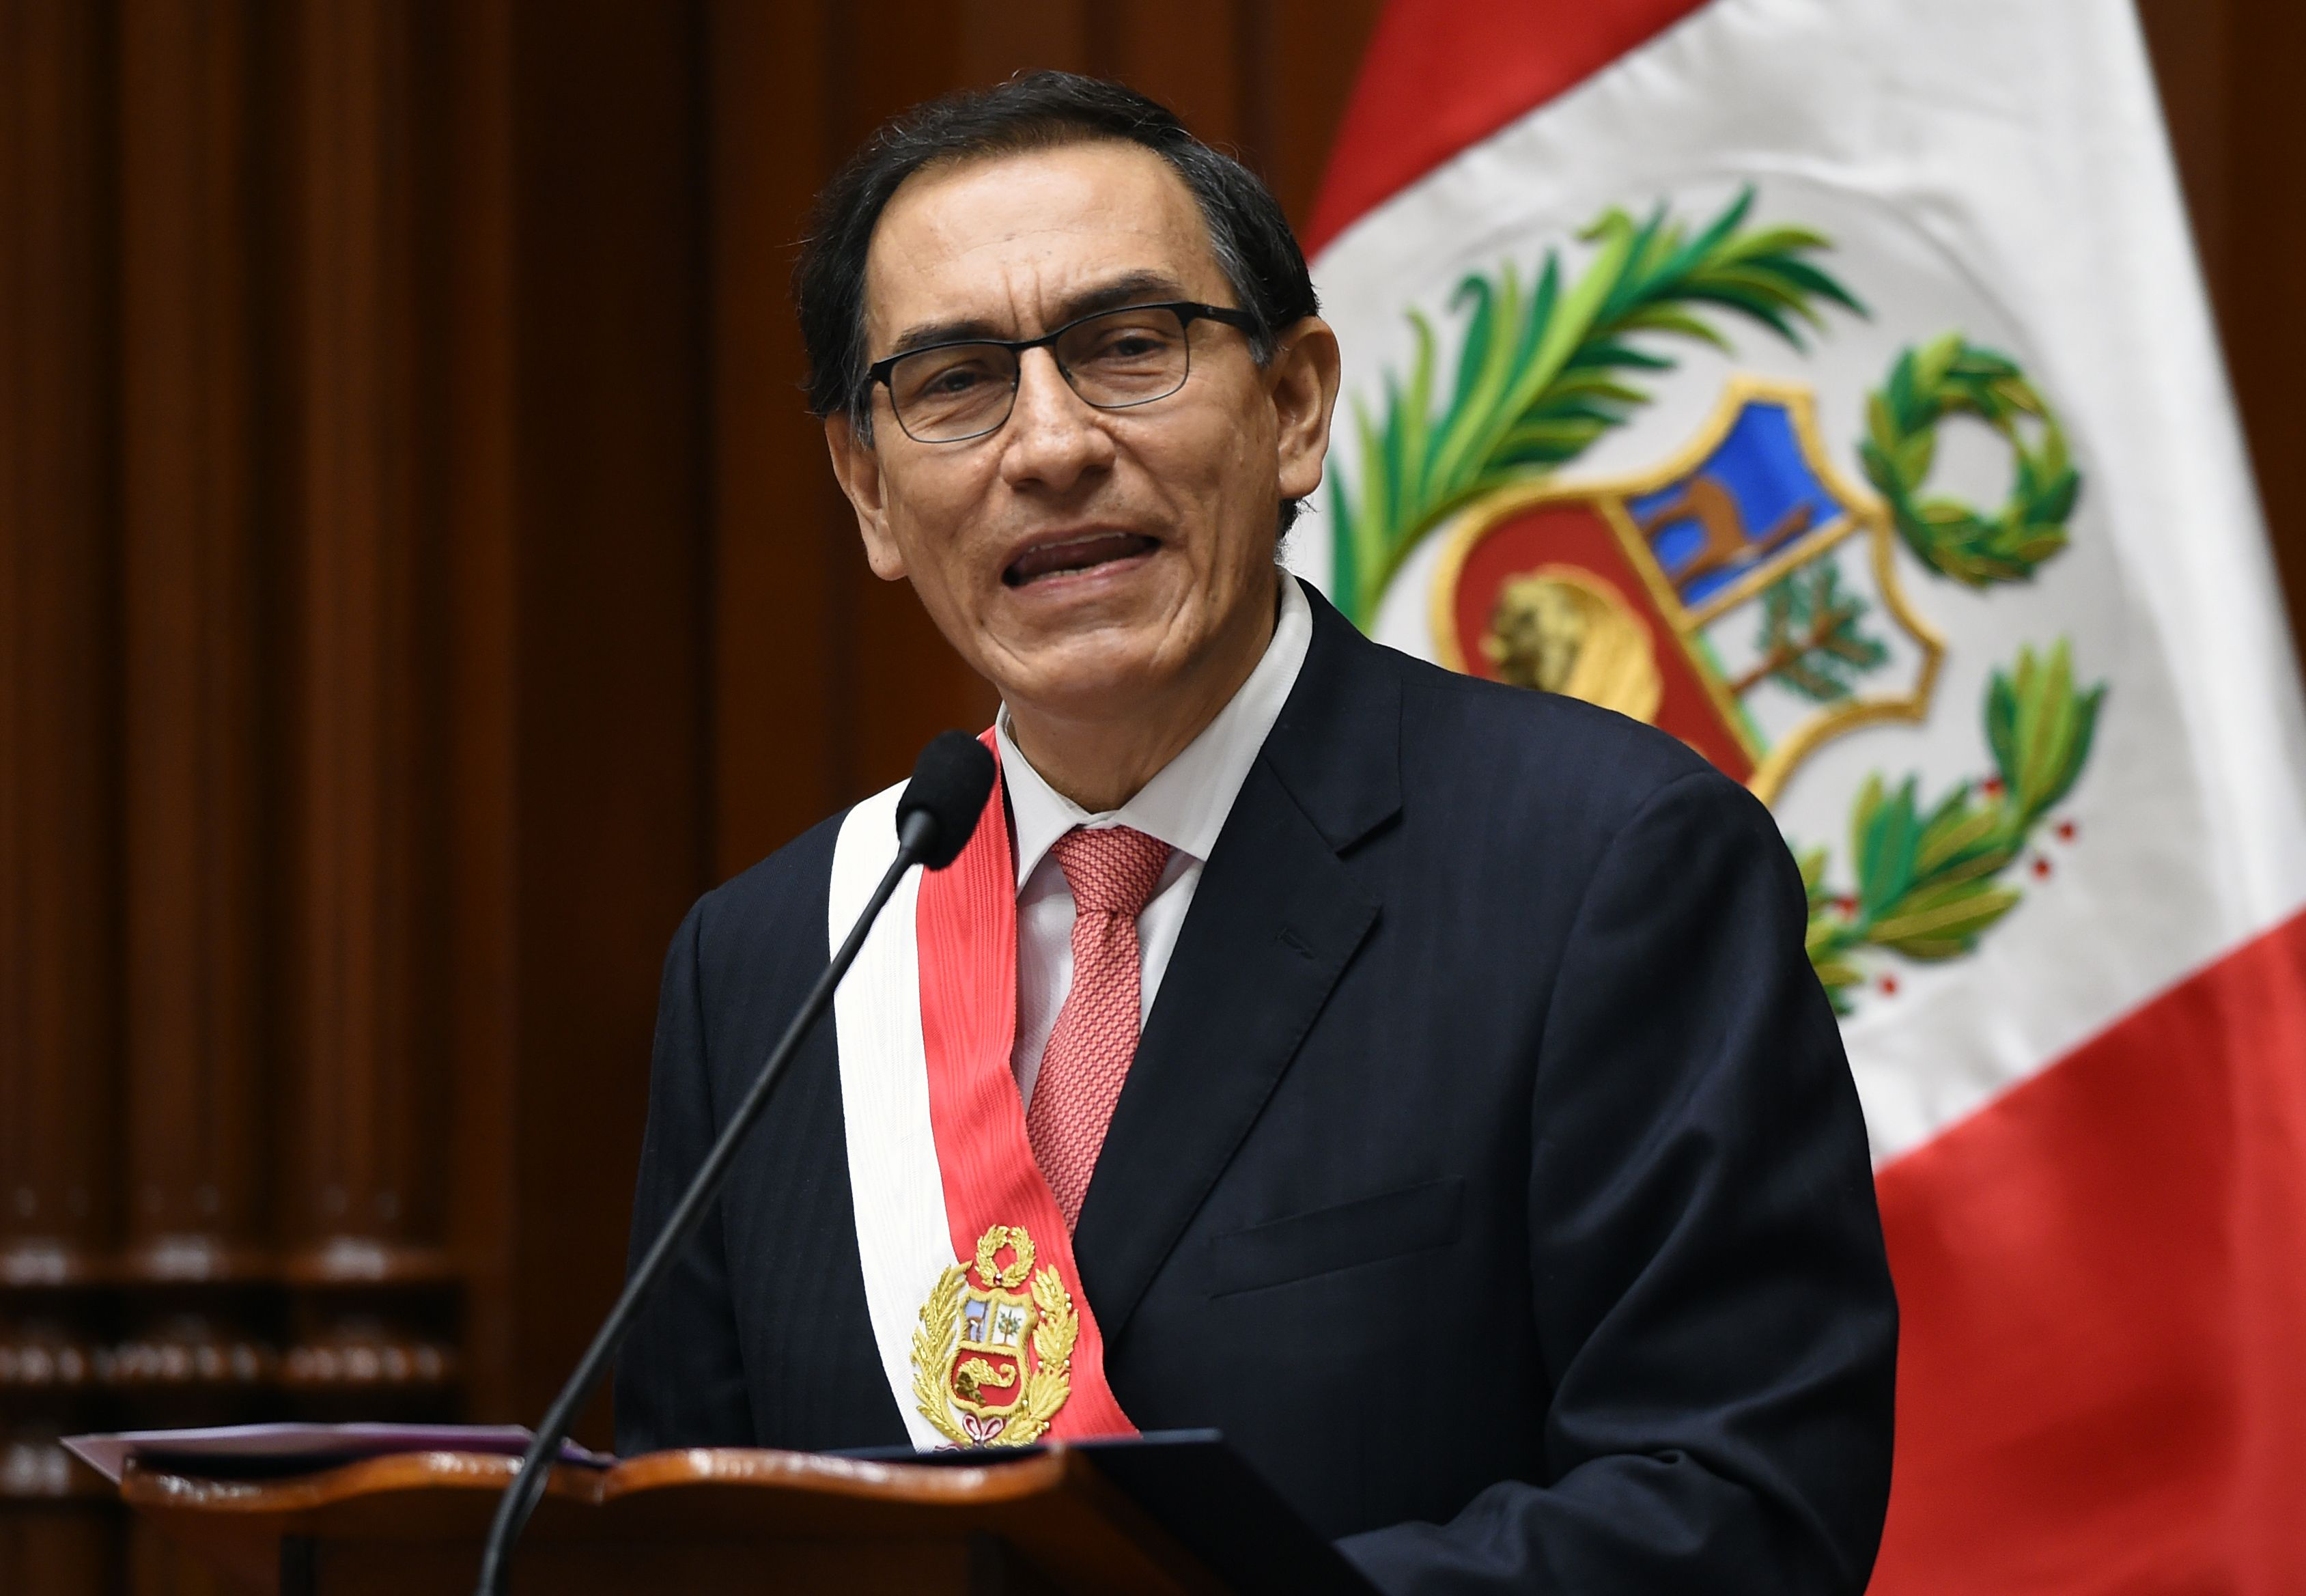 Martín Vizcarra fue presidente entre el 2018 al 2020